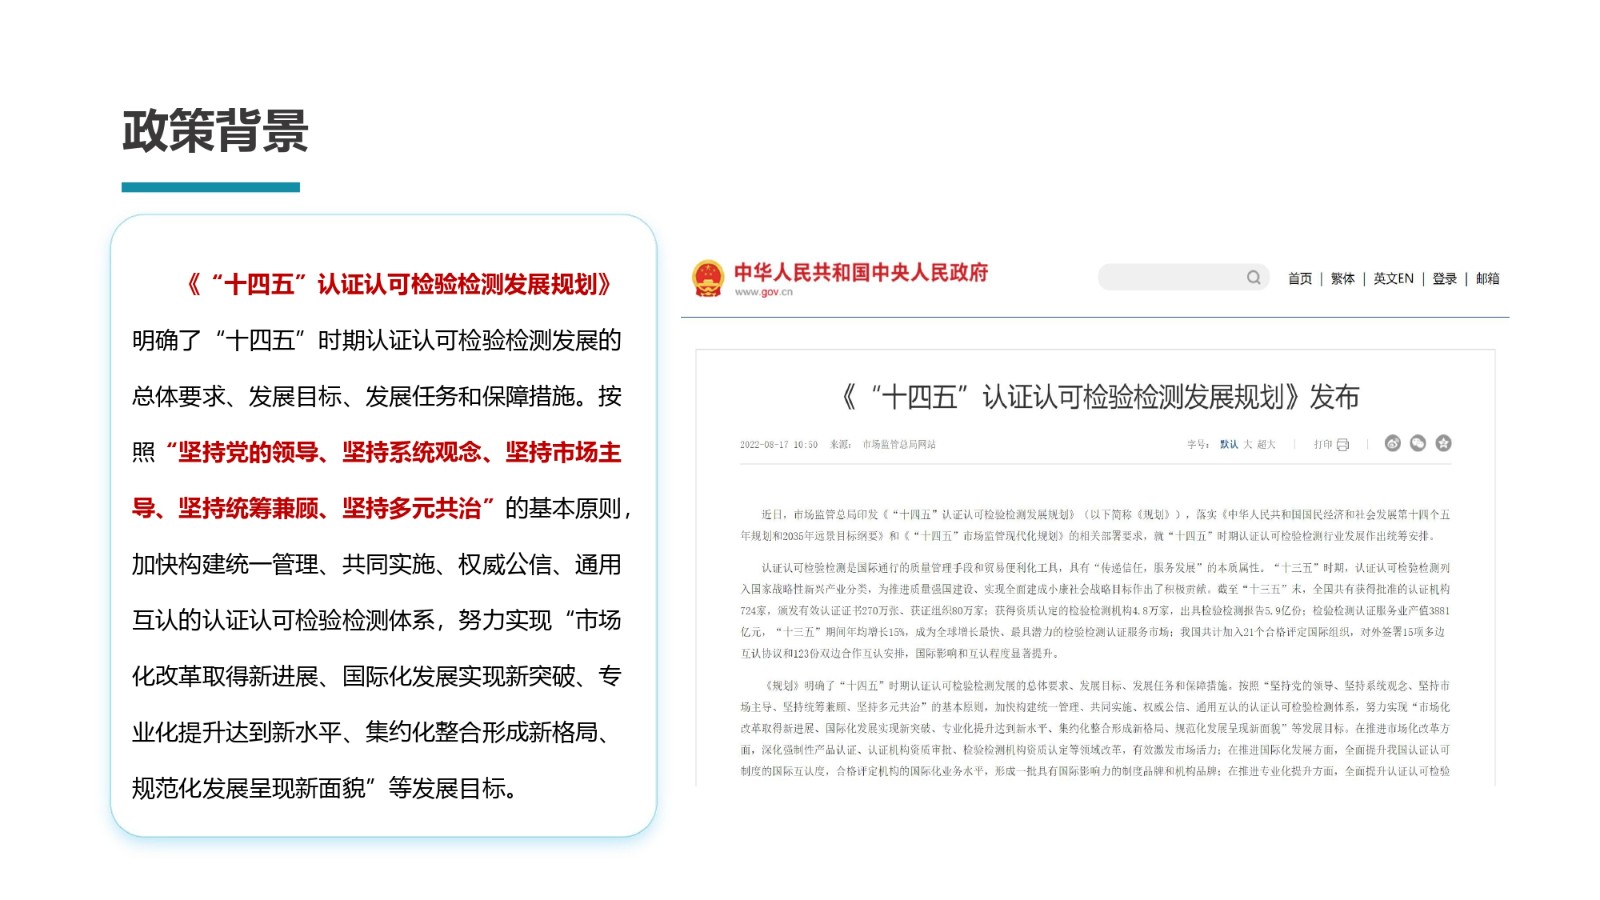 中国认证认可协会检验检测人员培训